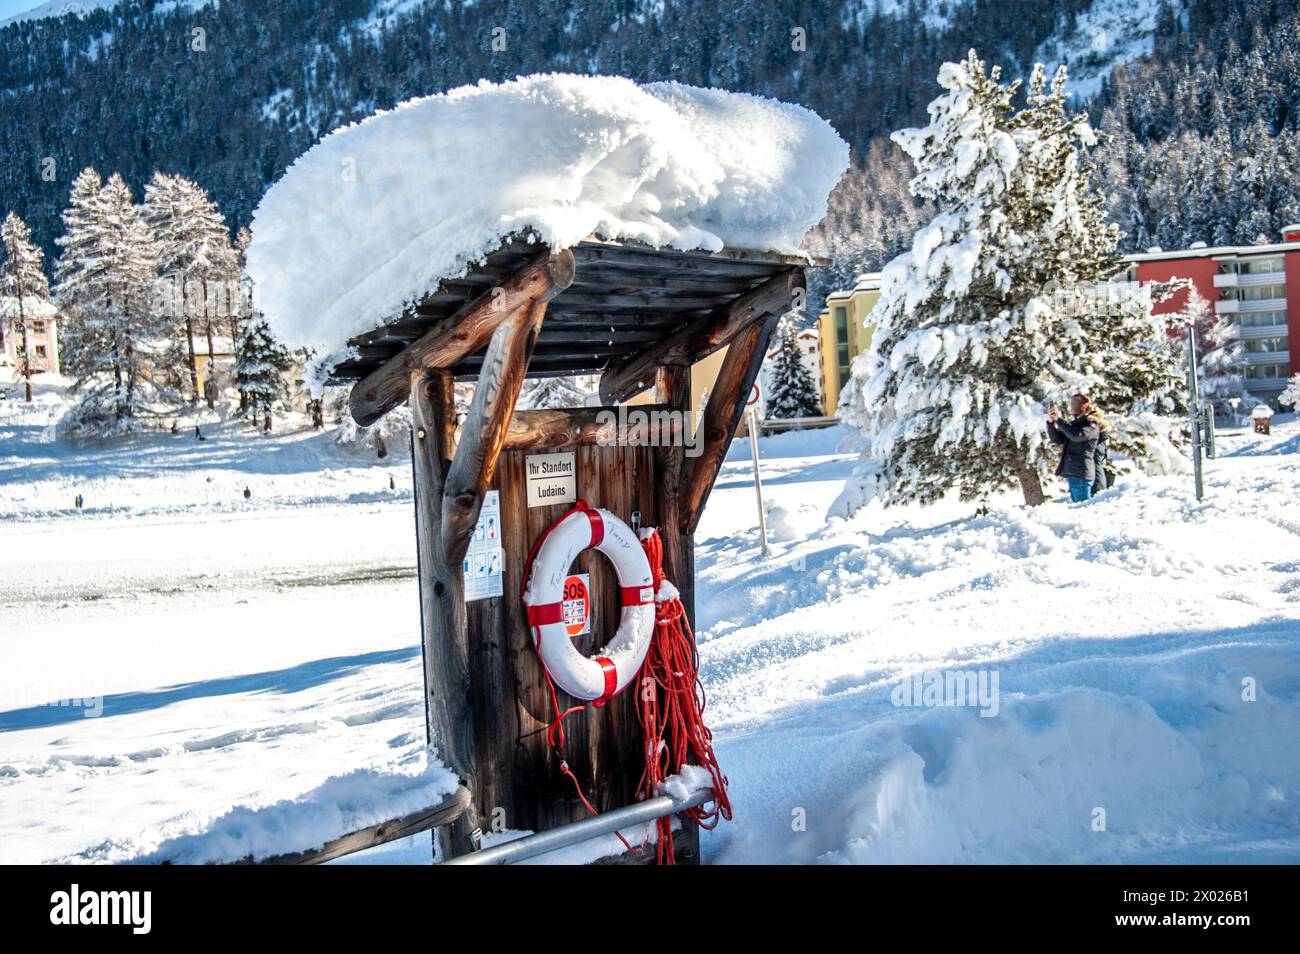 Eine Schwimmweste, die zur Rettung von Schwimmern auf dem Saint-Moritz-See verwendet wurde und in schneeähnliche Jacke getaucht ist Stockfoto